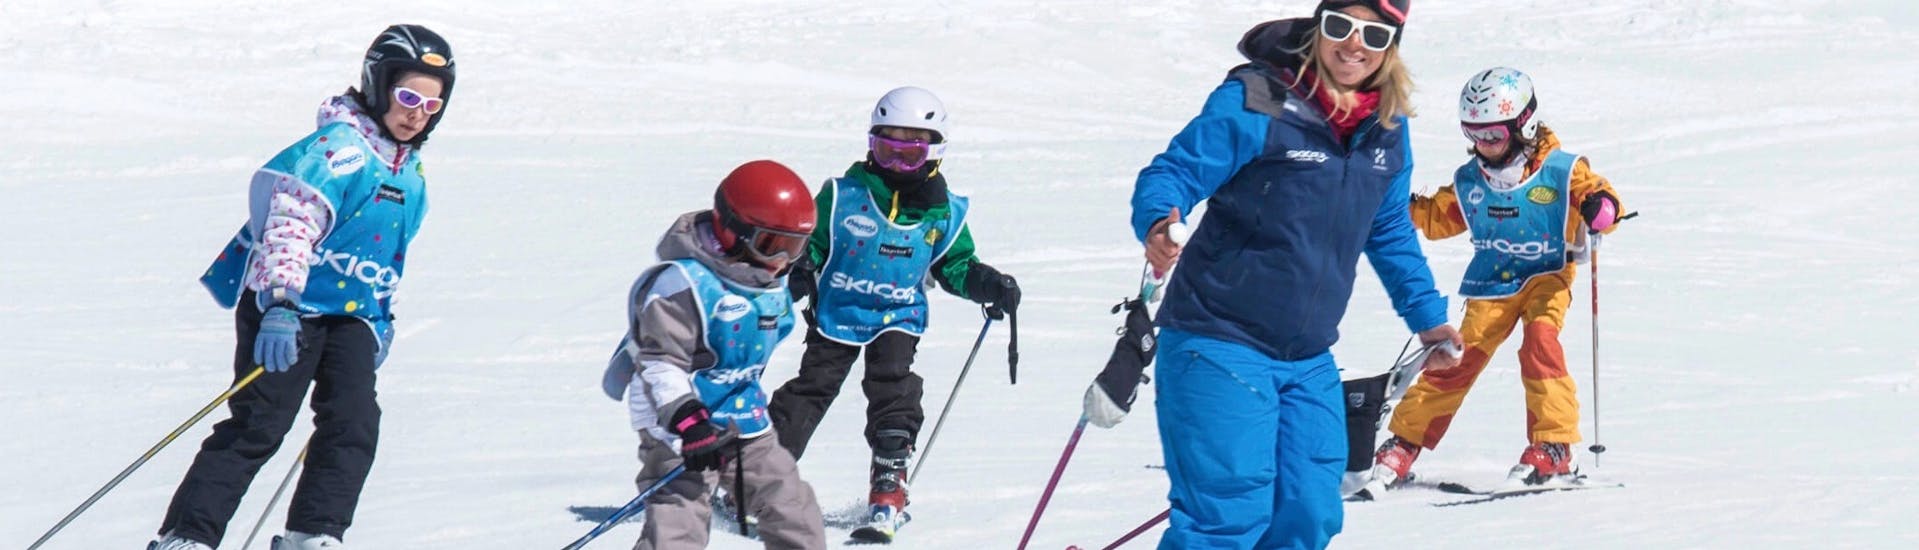 Des enfants skient le long d'une piste pendant leur Cours de ski Enfants (5-12 ans) - Cool 5 Kids avec Ski Cool Val Thorens